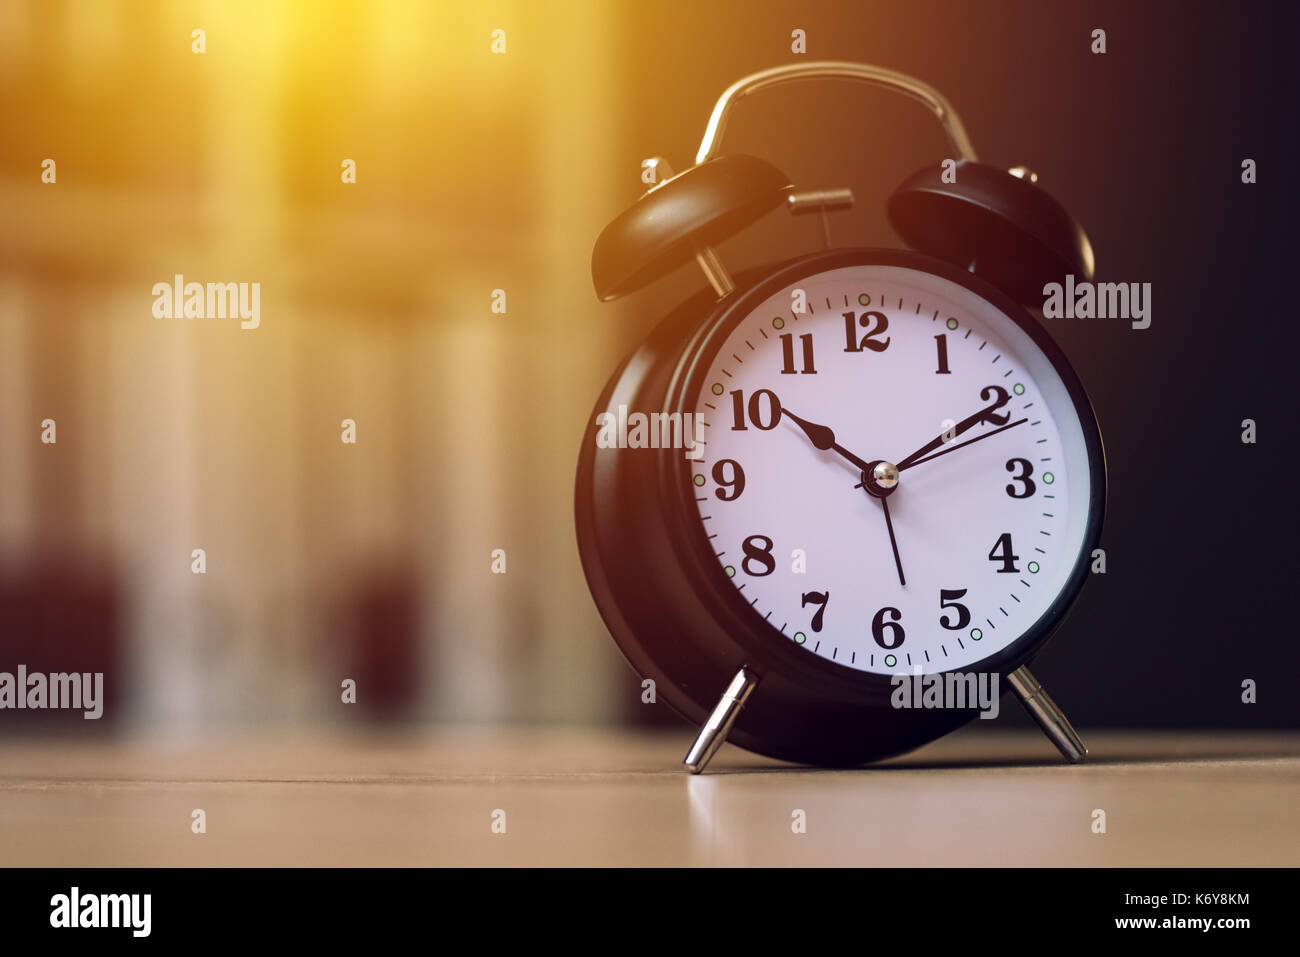 Réveil classique de l'heure pendant les heures de travail ou de travailler dans des bureaux d'affaires, selective focus Banque D'Images